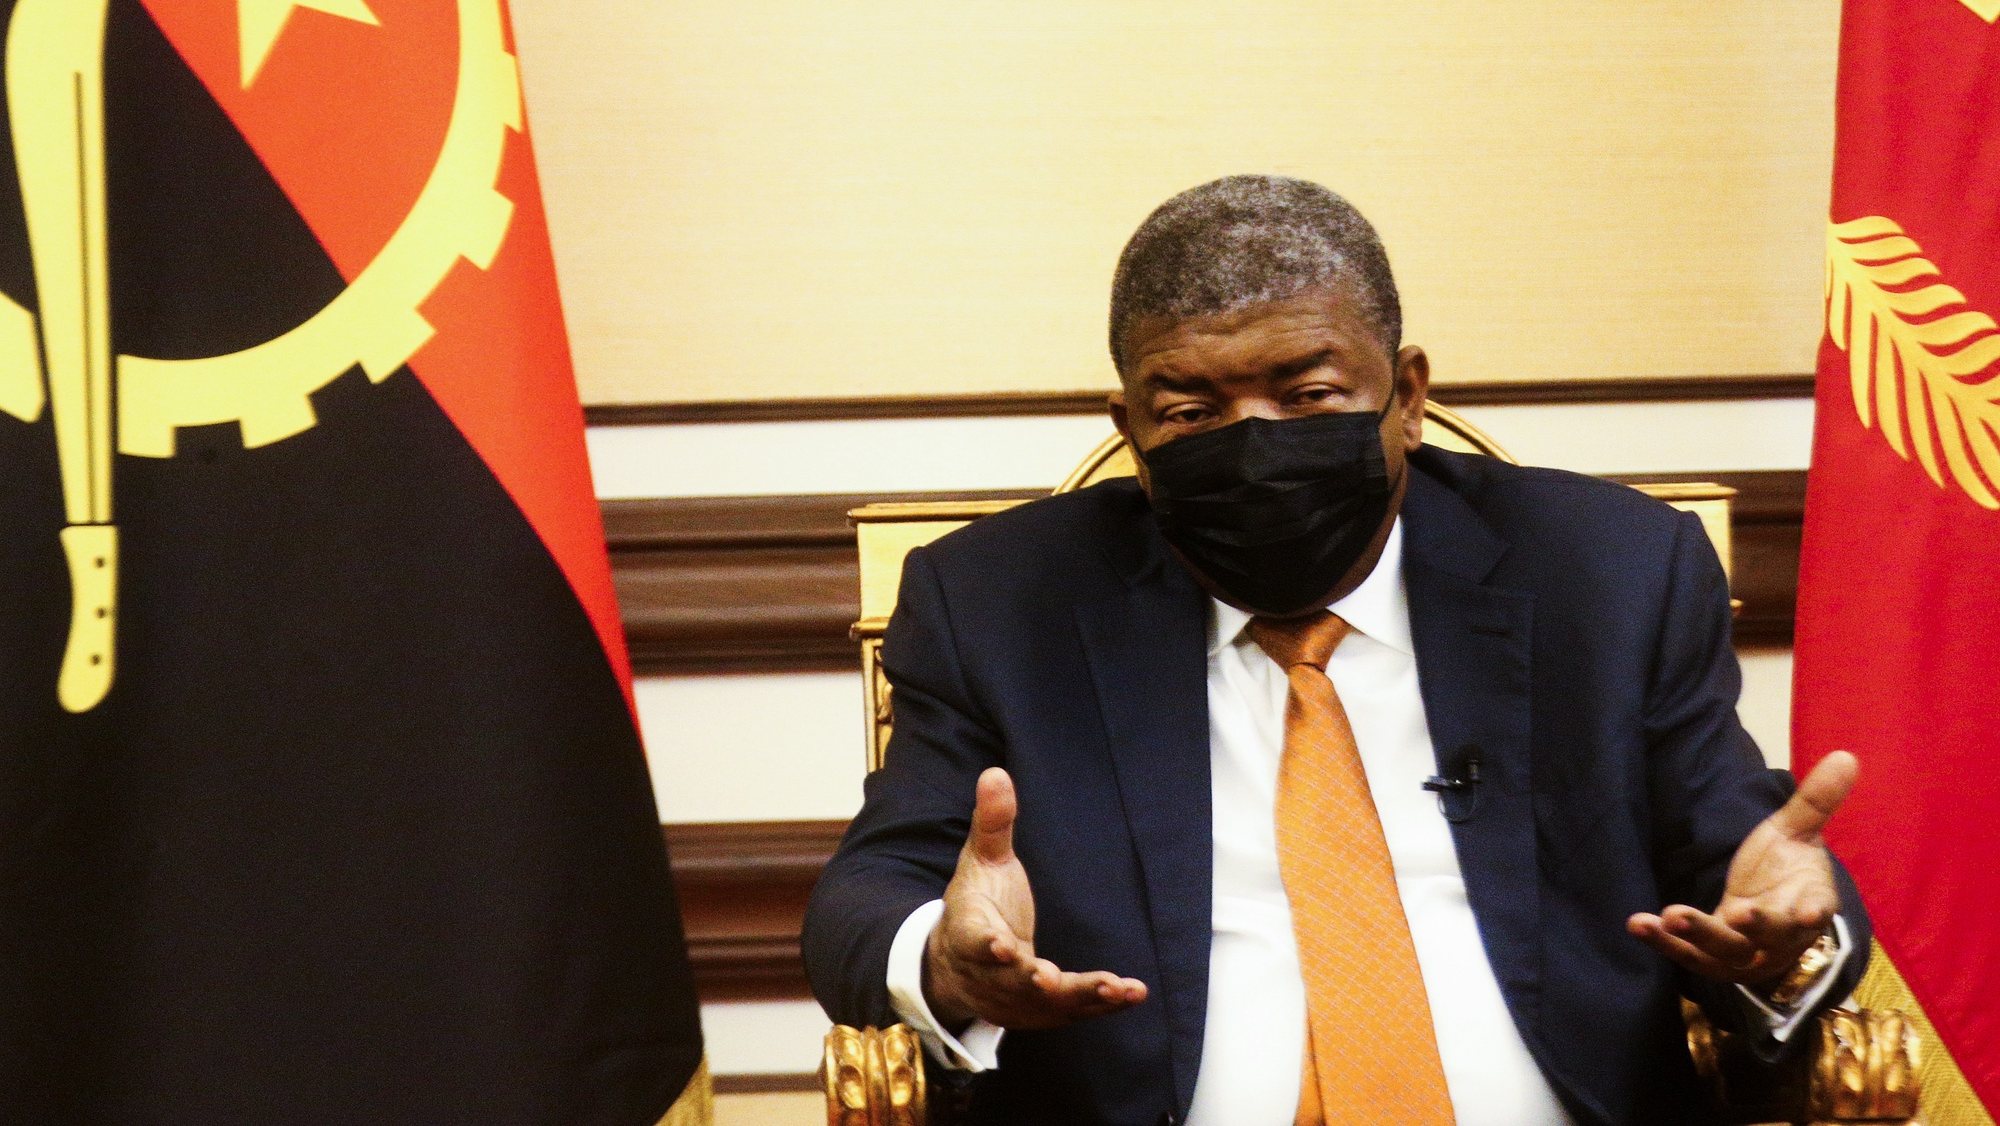 O Presidente da República de Angola, João Lourenço, fala durante uma entrevista